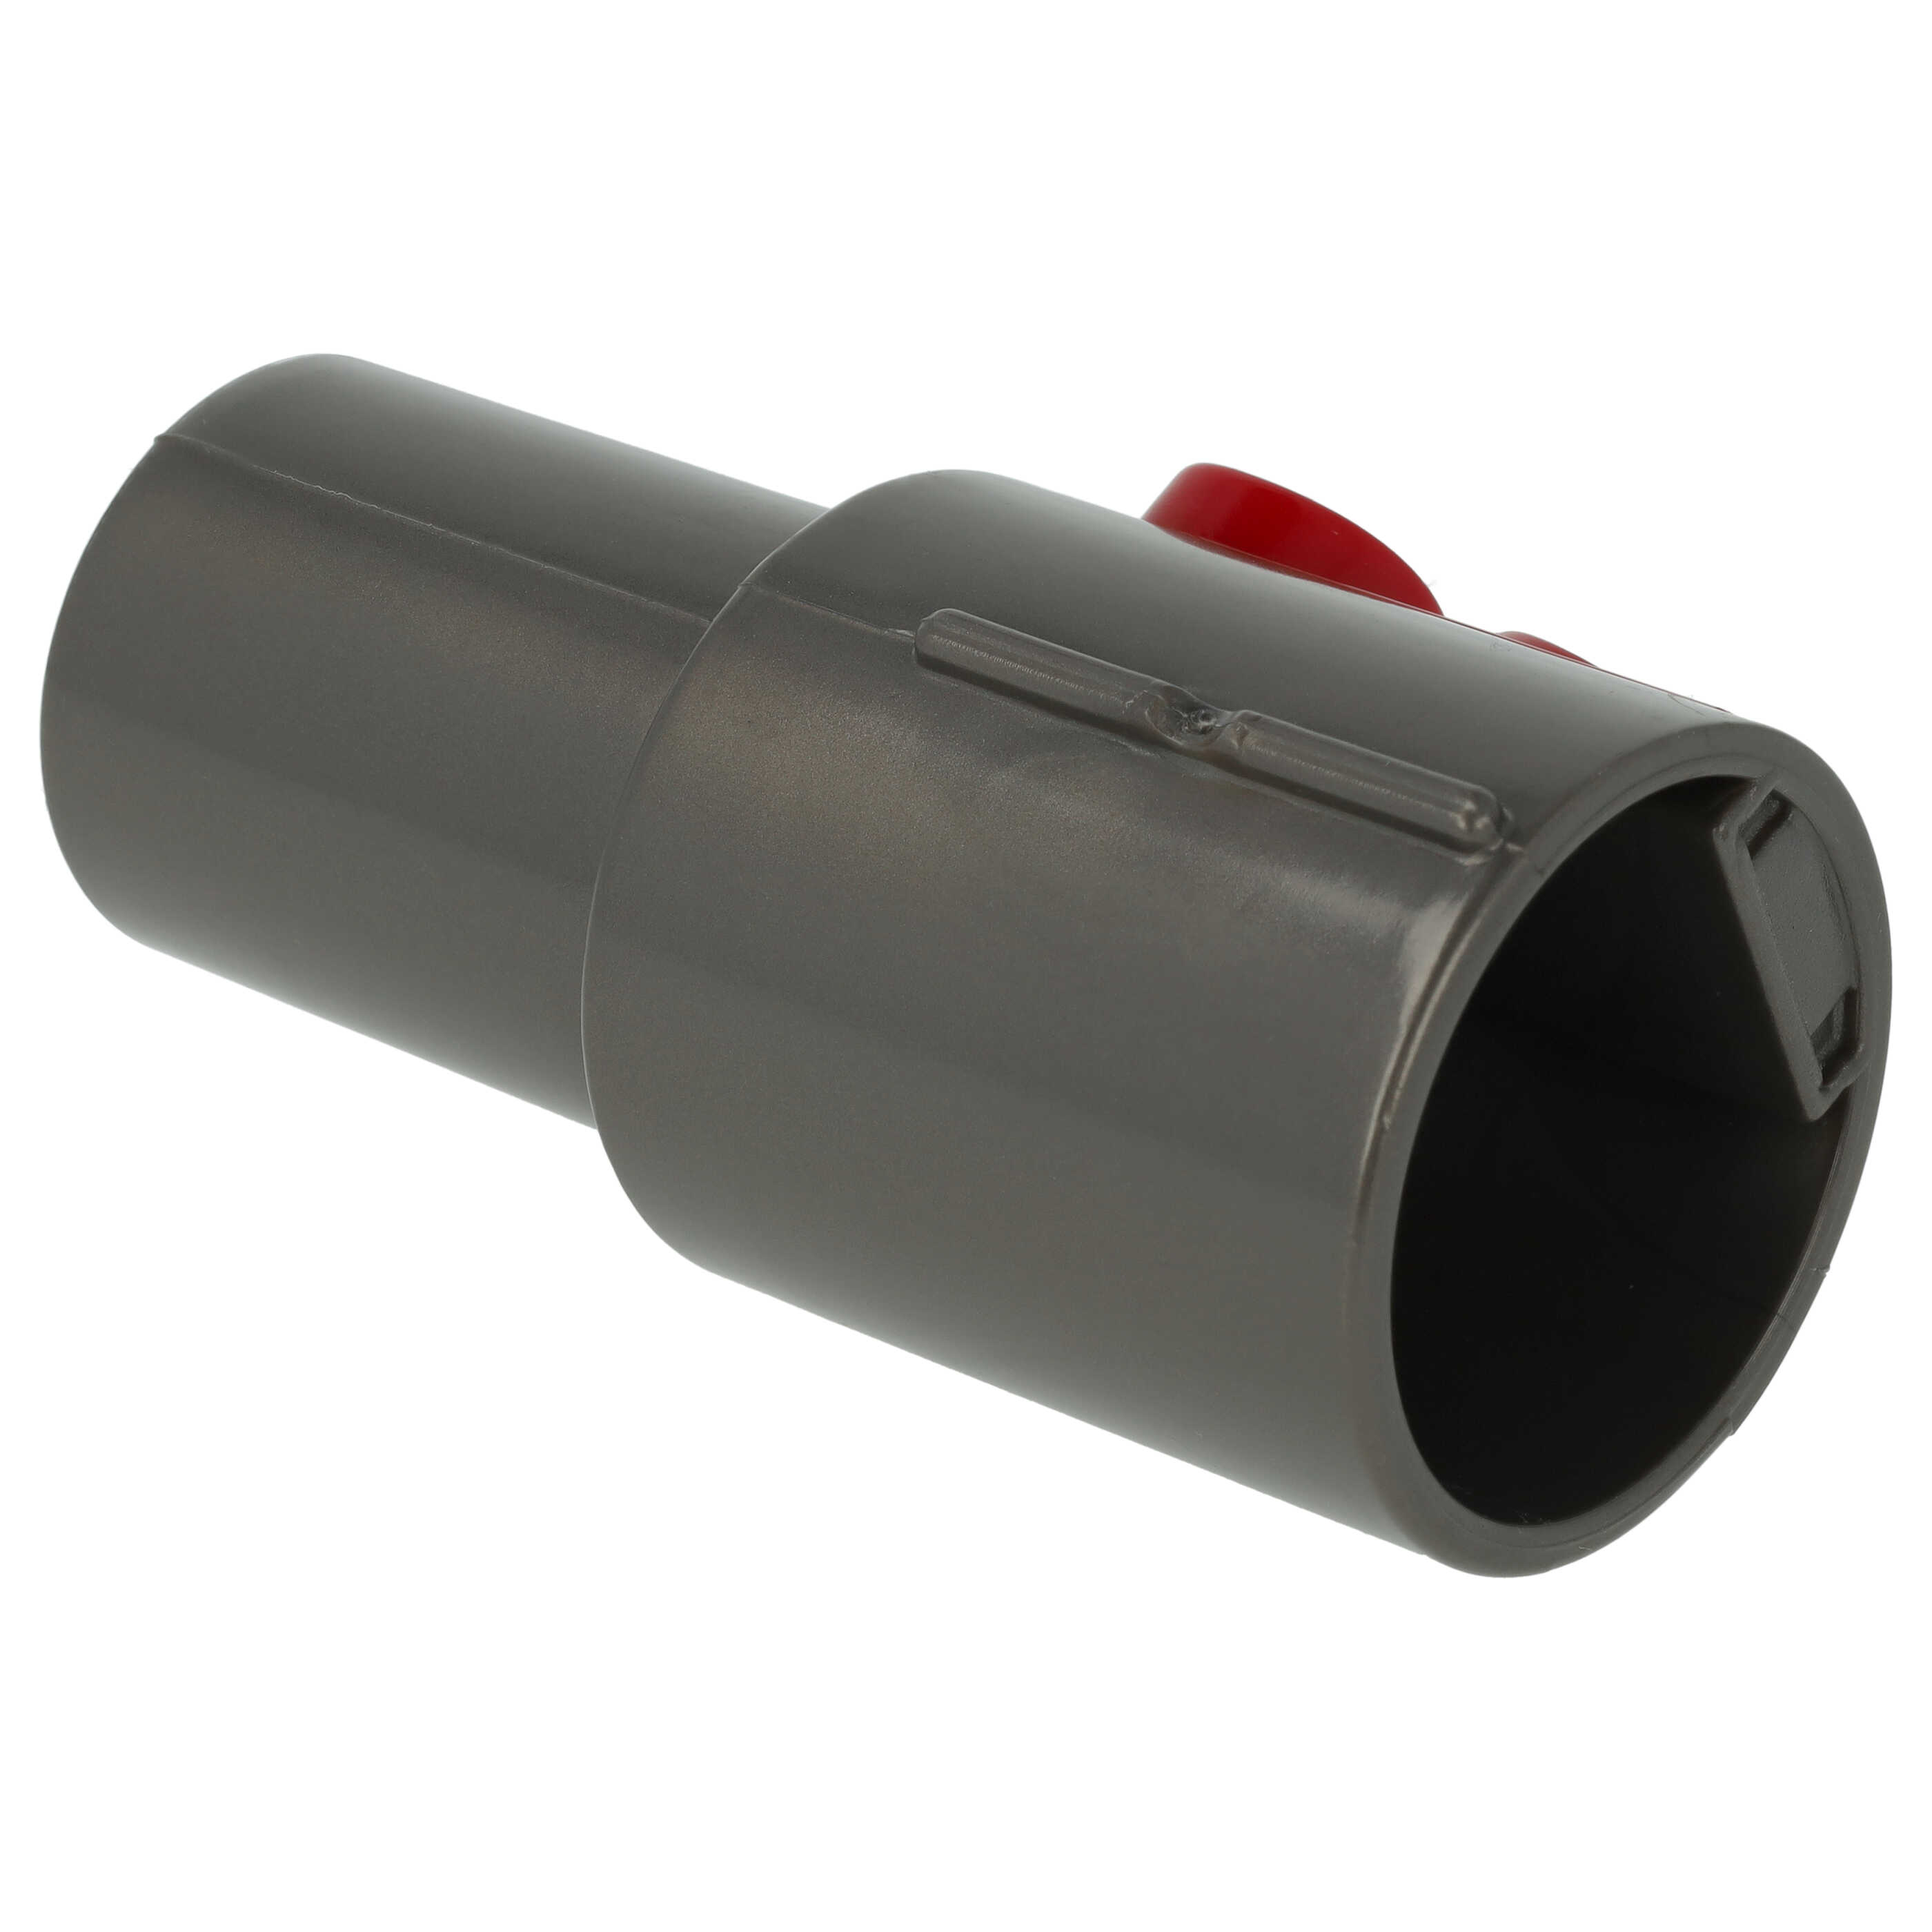 Raccordo con attacco accessori 32mm per aspiratore - rosso / grigio scuro